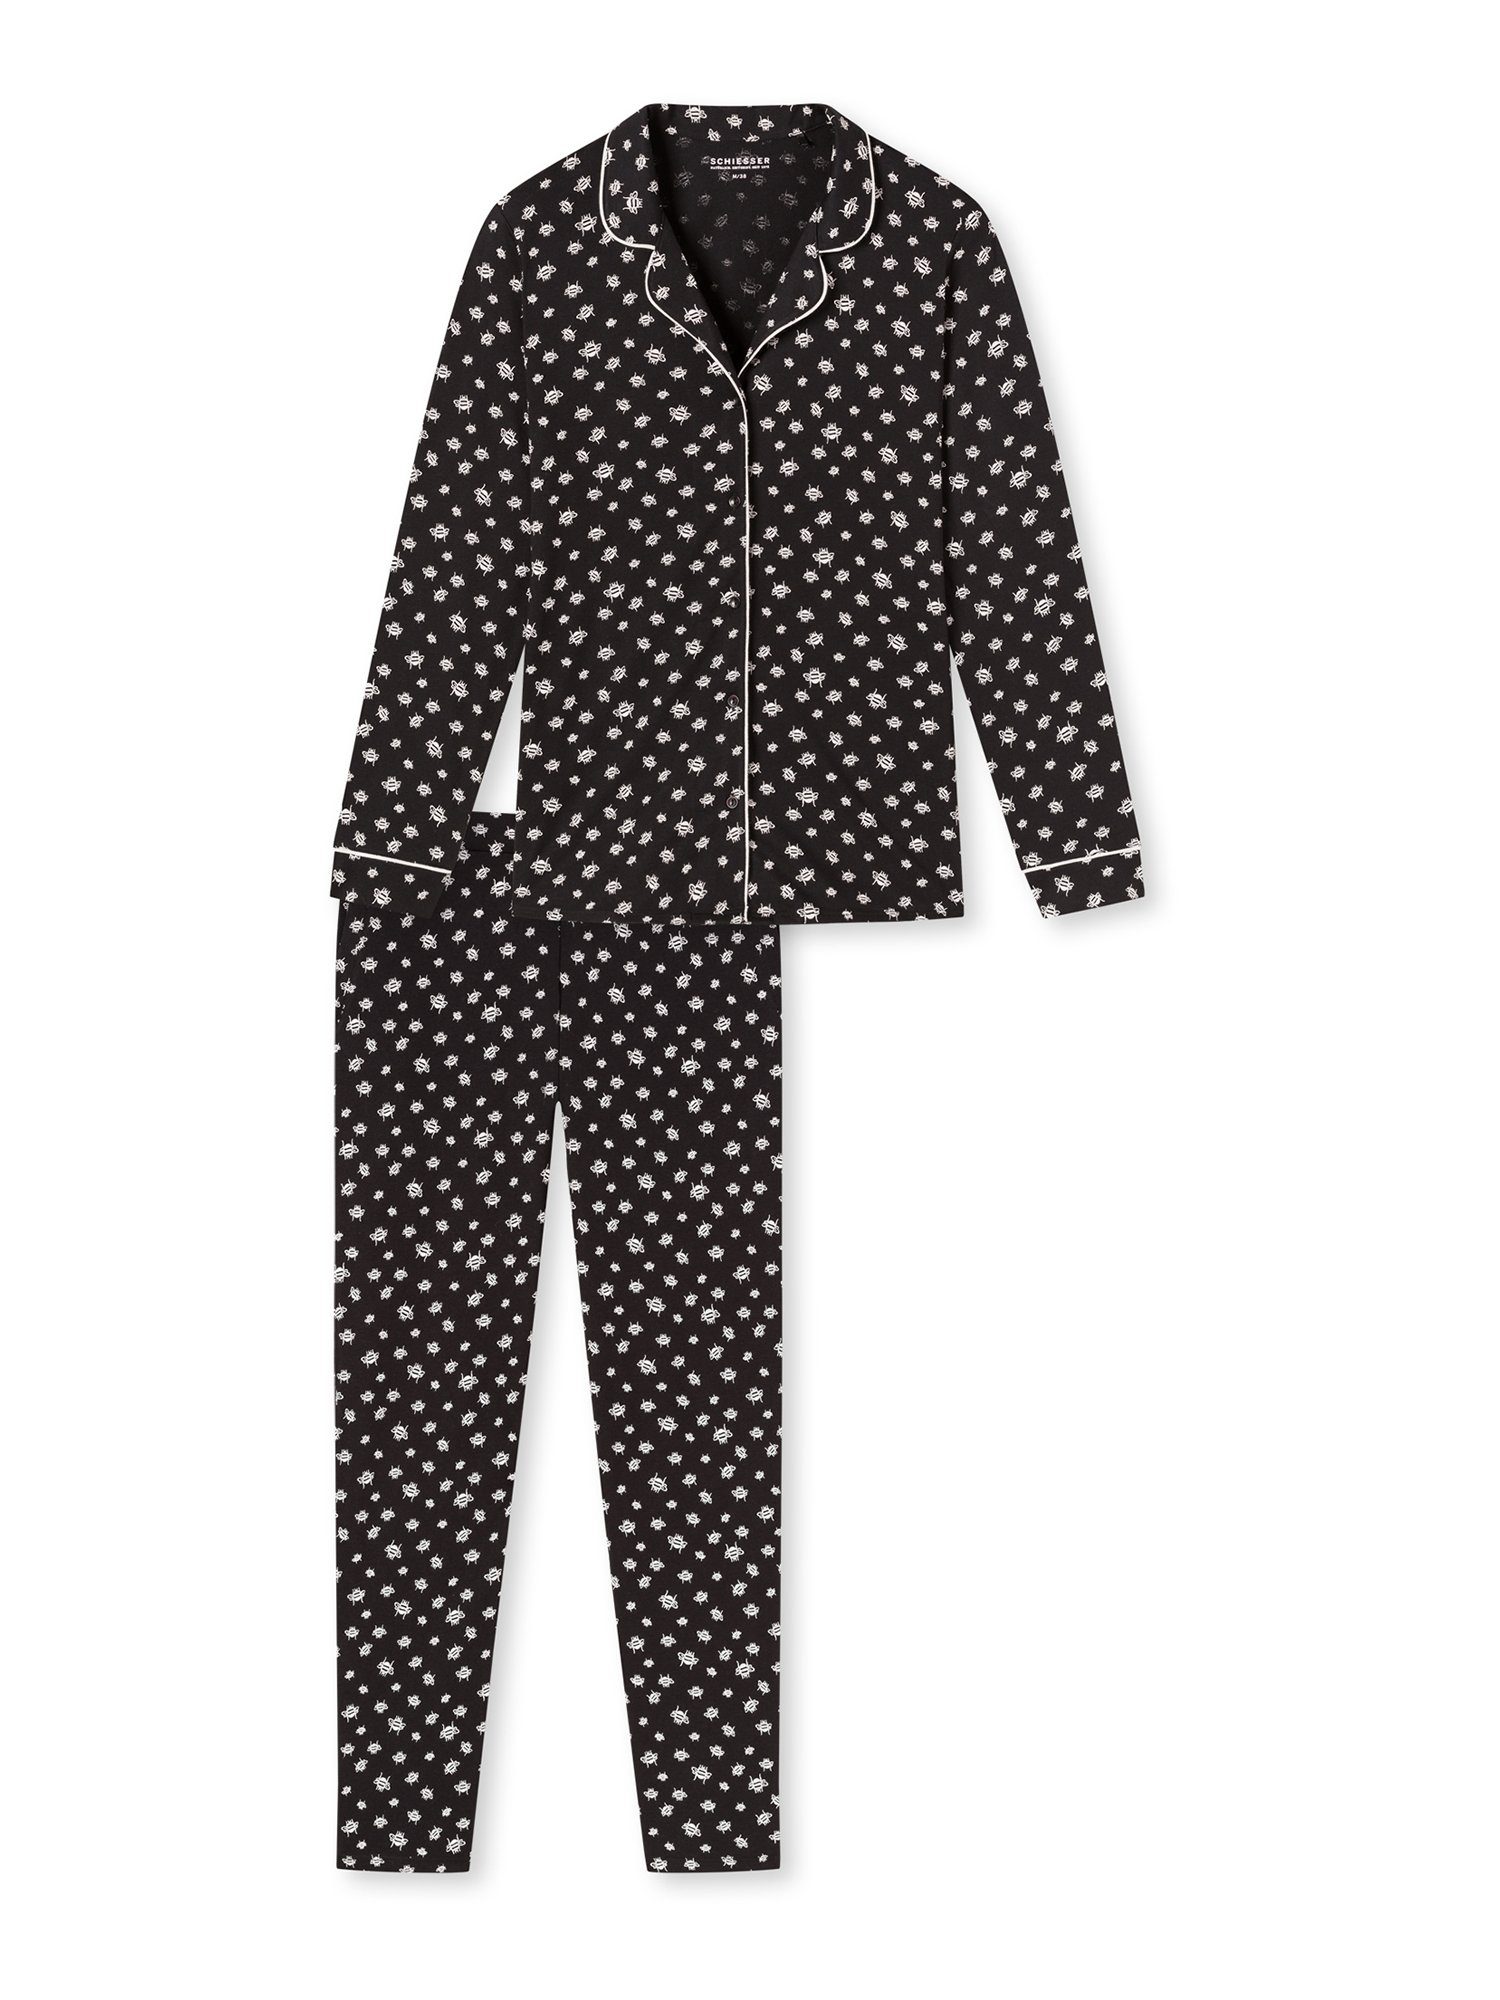 Schiesser Pyjamas online kaufen » Schiesser Schlafanzug | OTTO